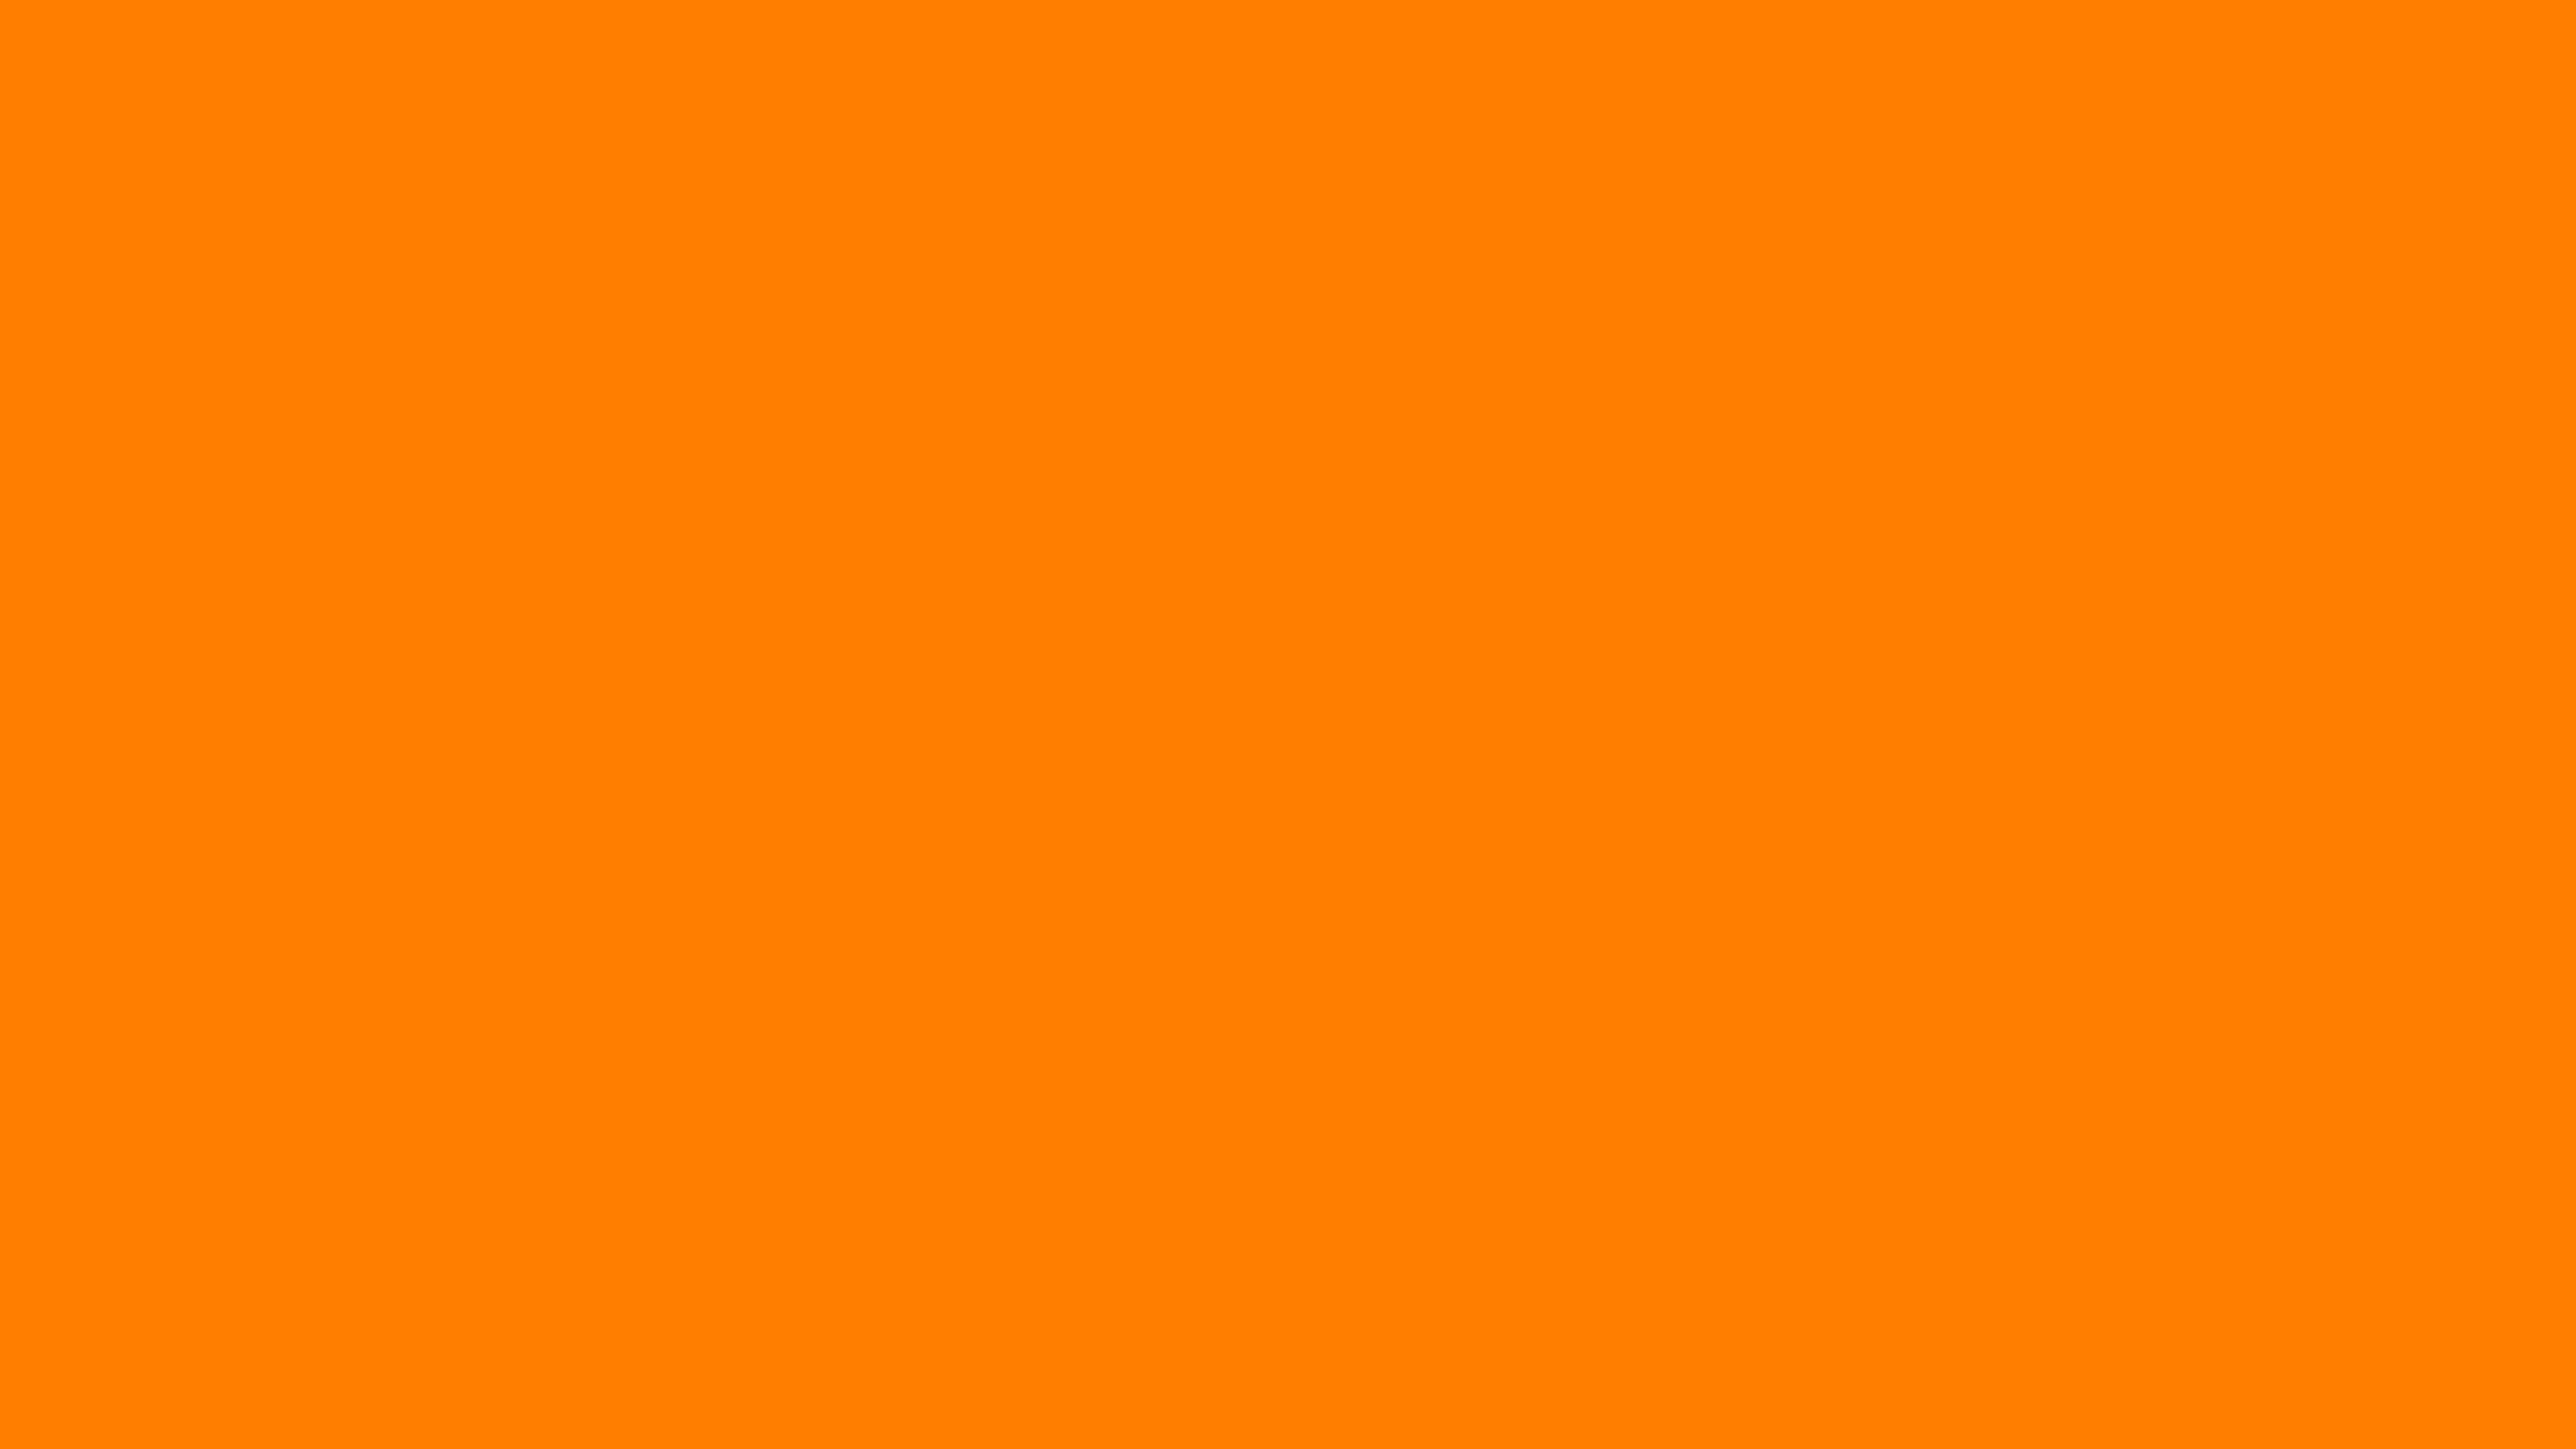 7680x4320 Amber Orange Solid Color Background